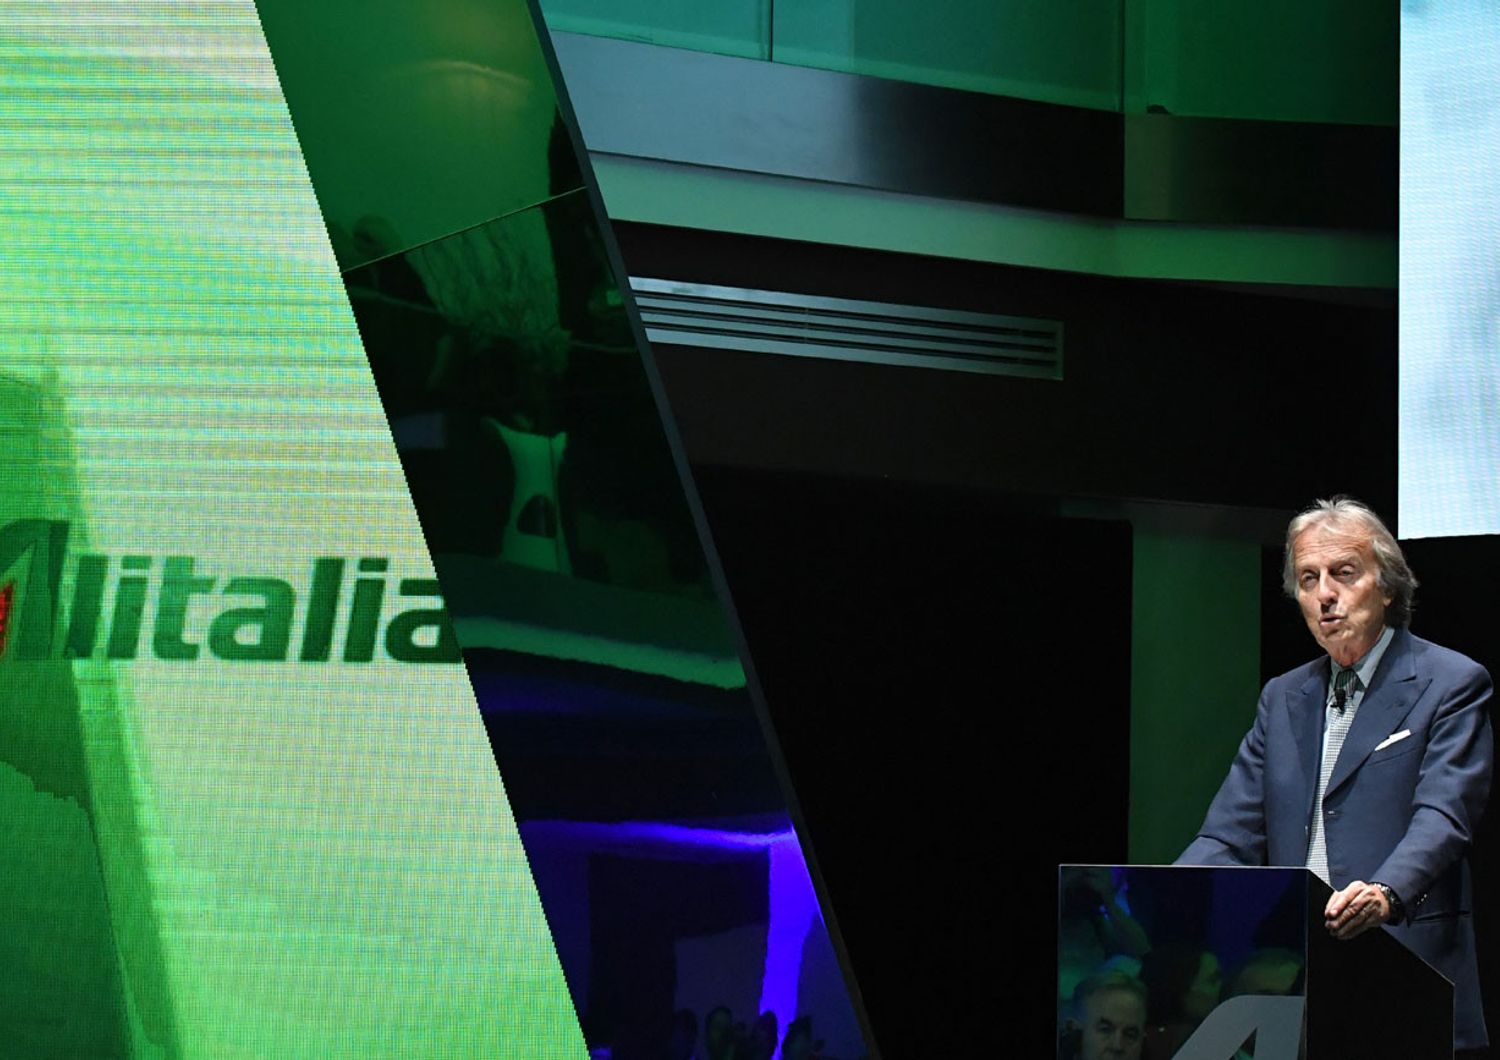 Il presidente di Alitalia Luca Cordero di Montezemolo alla presentazione delle nuove divise Alitalia (Afp)&nbsp;